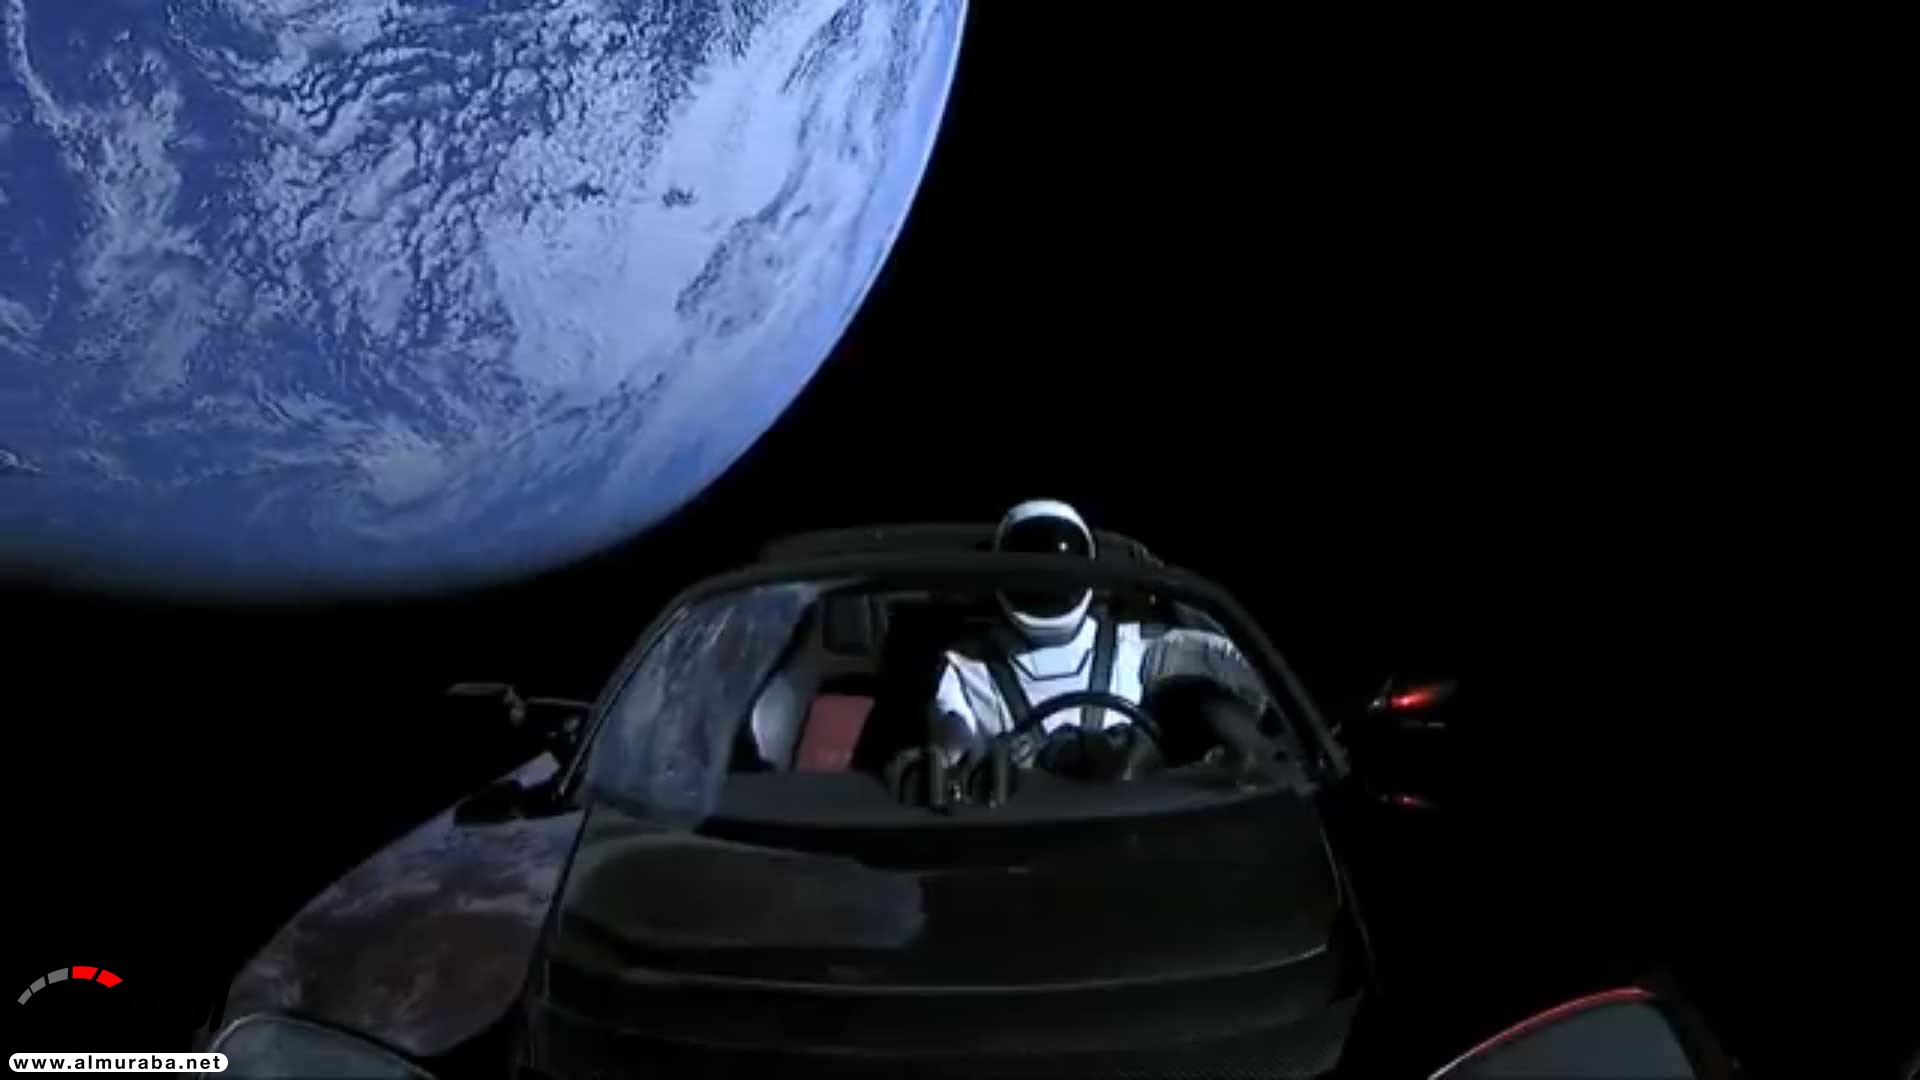 "بالفيديو والصور" إيلون ماسك يطلق تيسلا رودستر إلى المريخ في أقوى صاروخ بالعالم 6